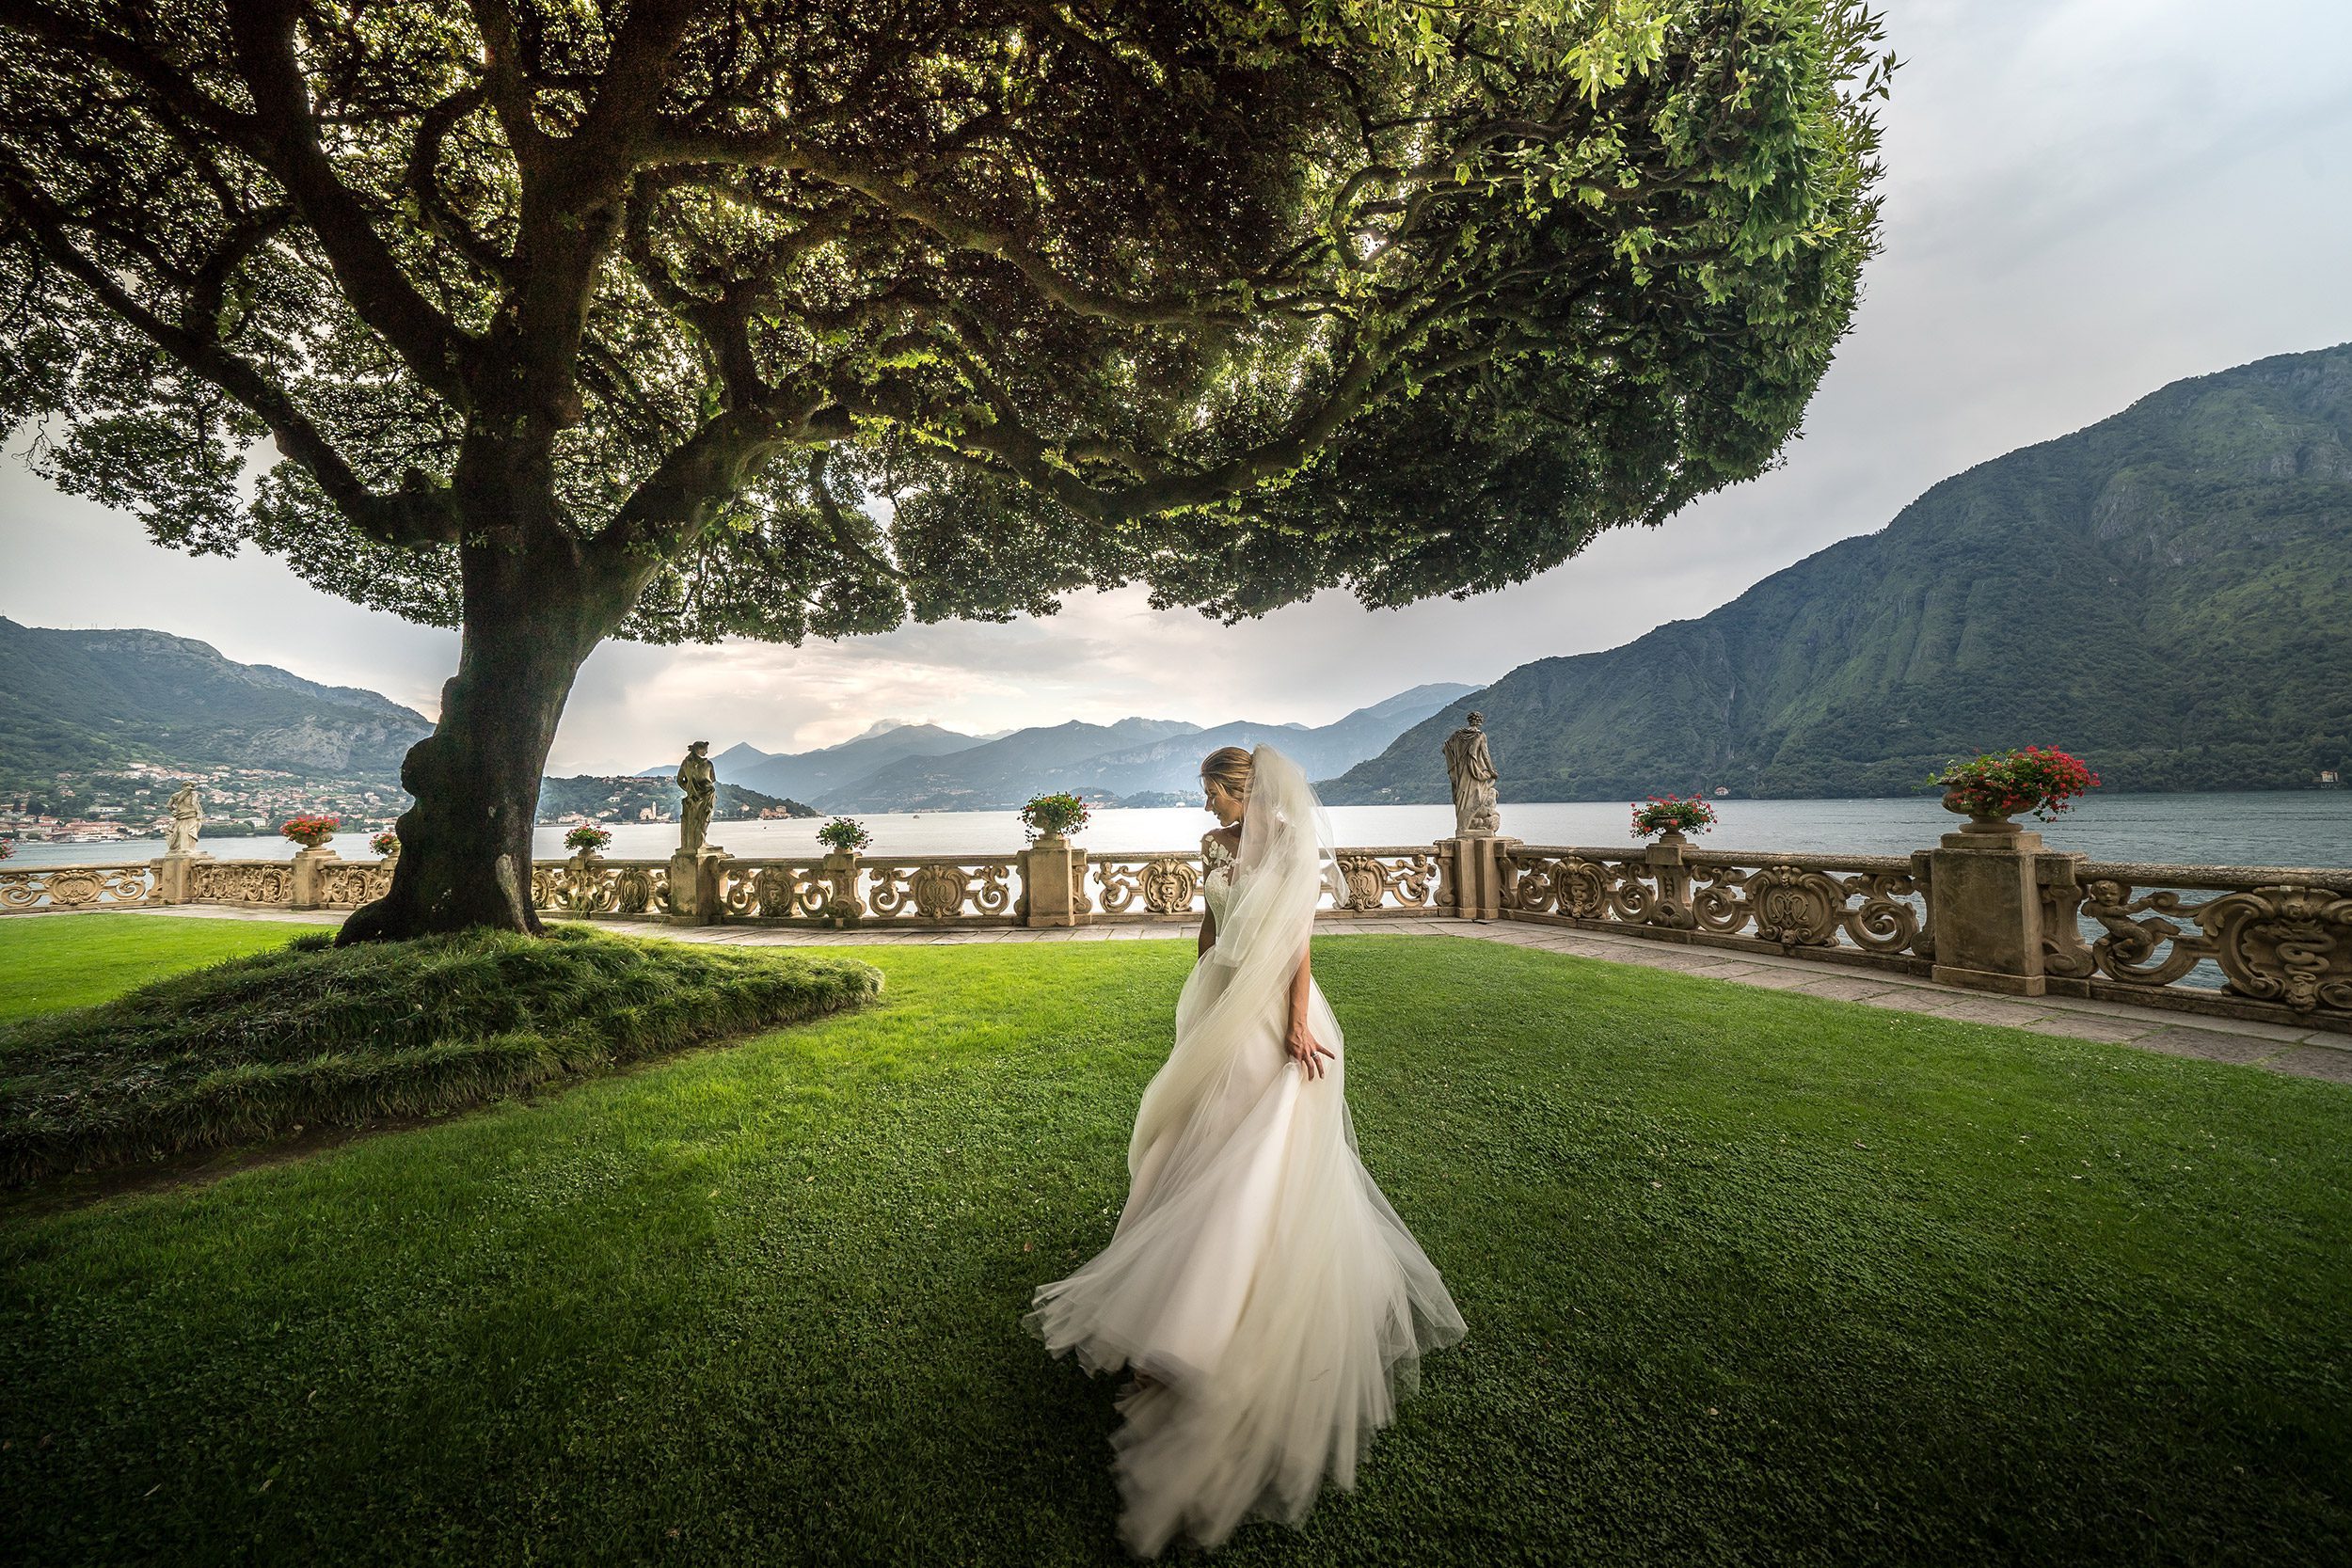 001 wedding photographer lake como italy villa balbianello 2